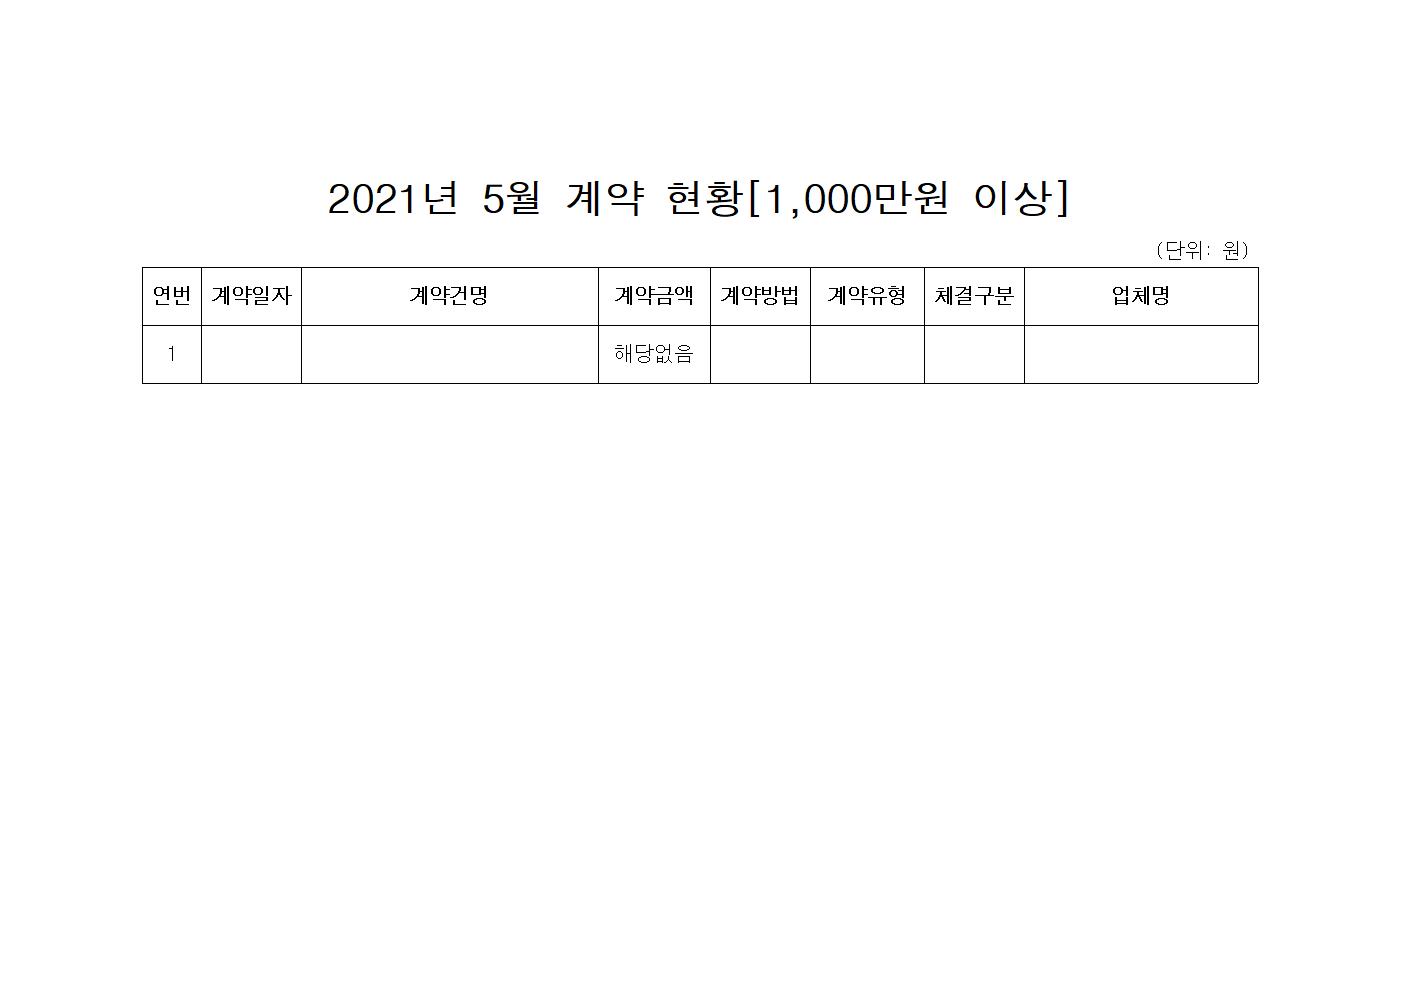 홍천경찰서 수의계약 현황(2021년 5월)-2021년 5월 계약현황